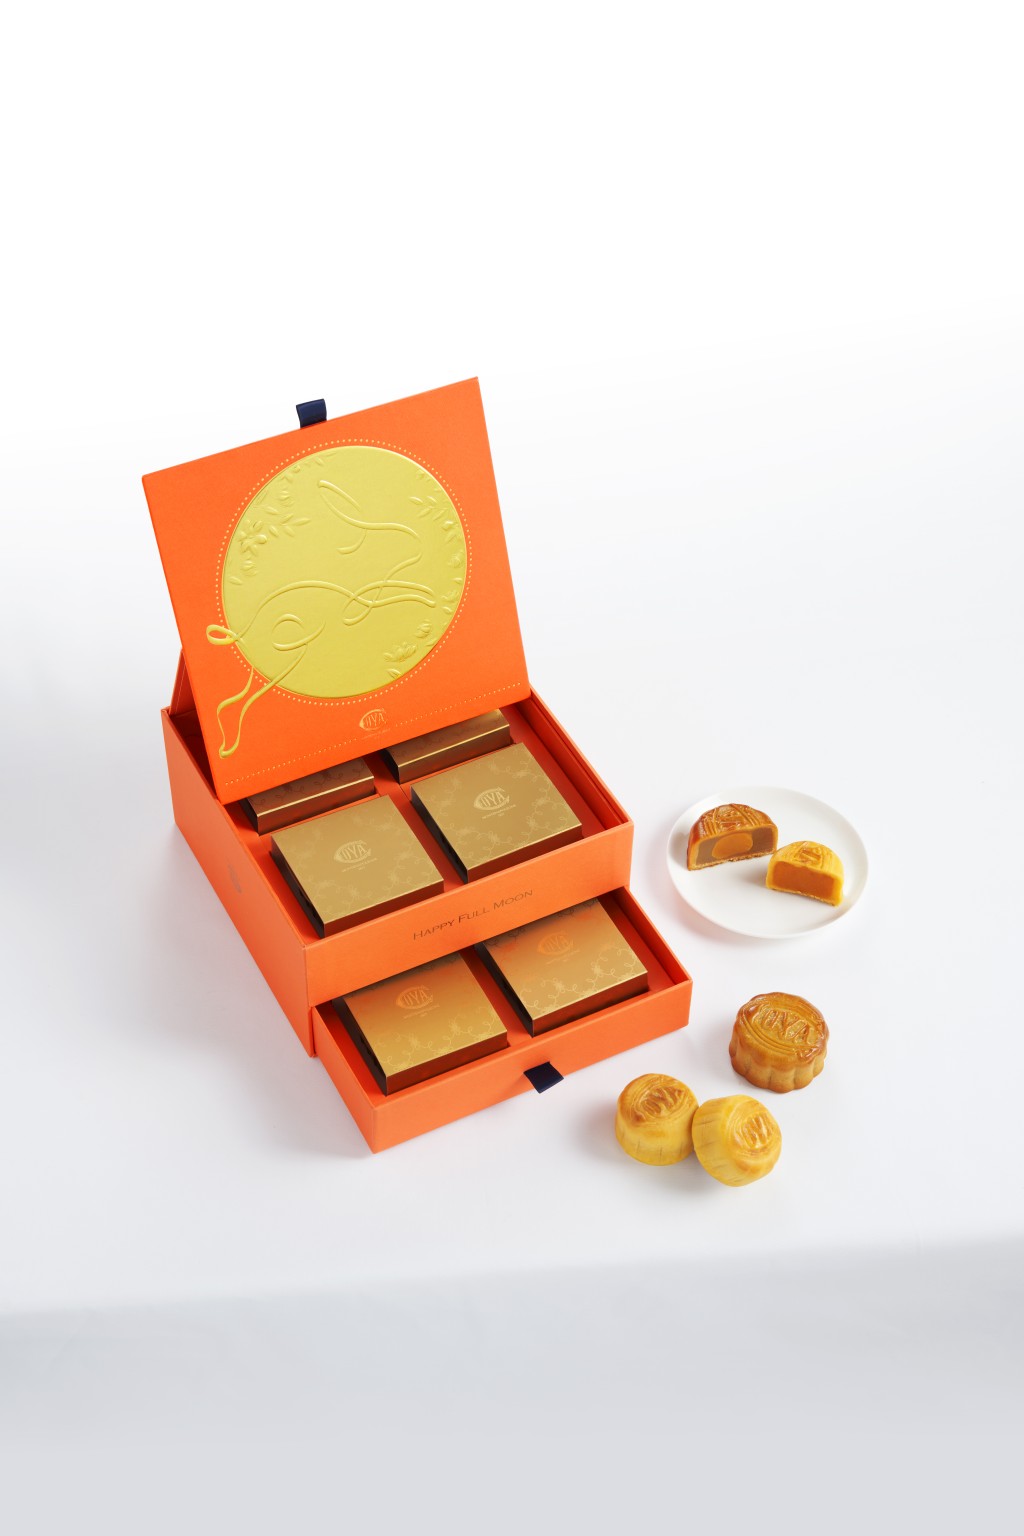 7月17日前訂購米蘭之秋月餅禮盒可享低至7折優惠。